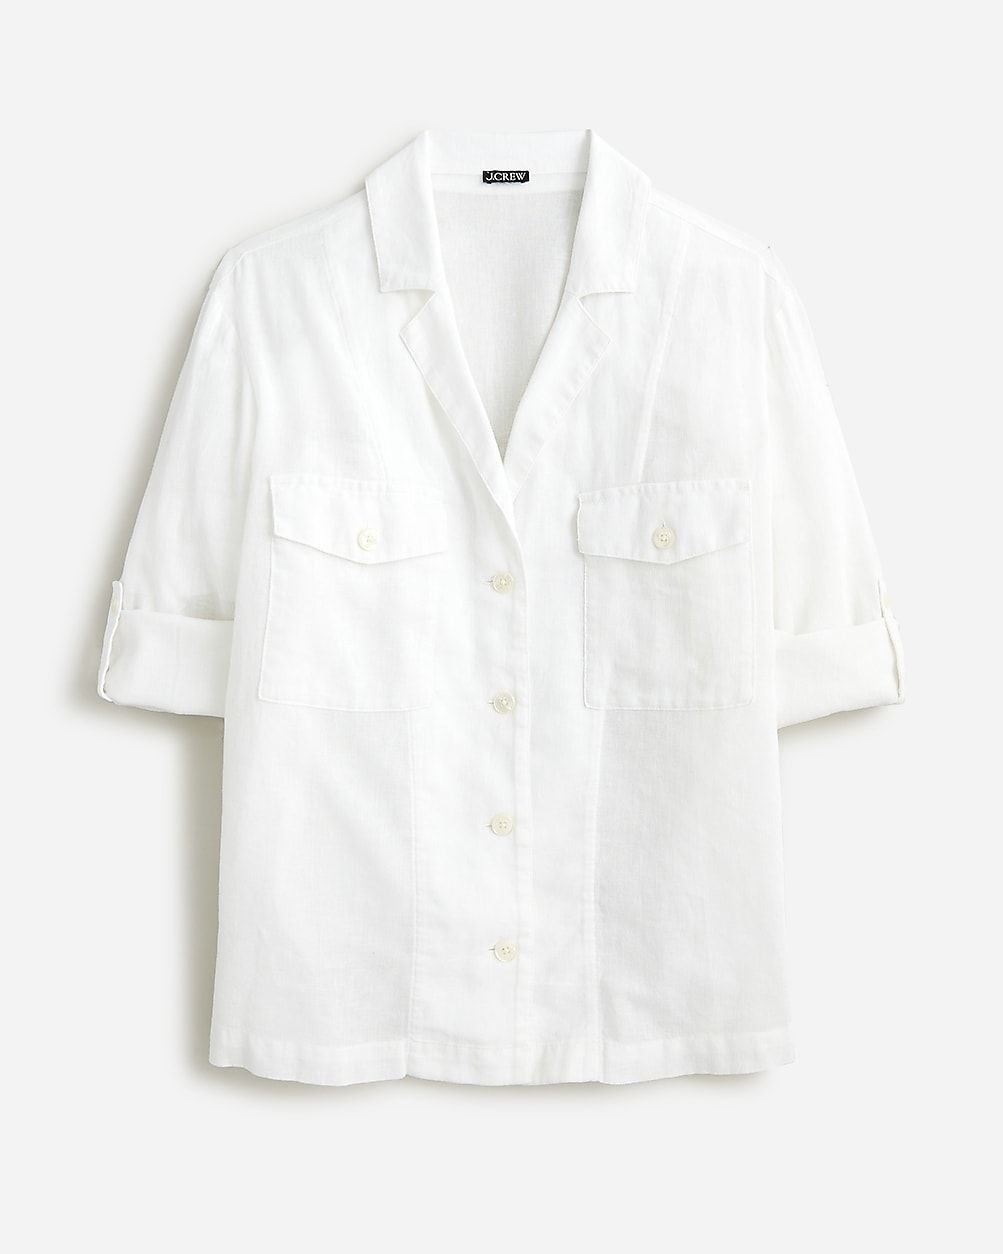 Camp-collar shirt in featherweight linen blend | J.Crew US